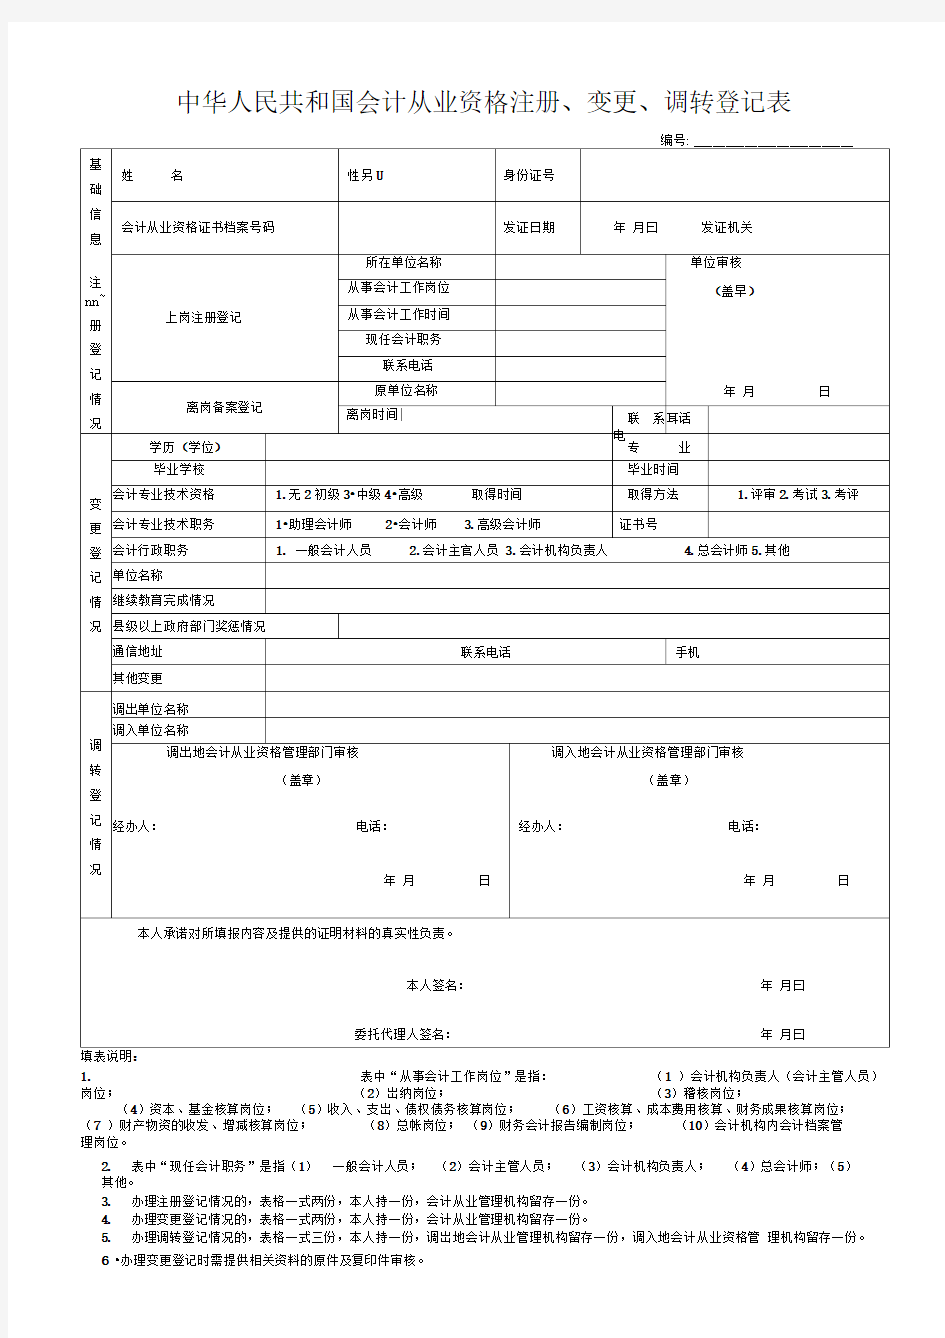 中华人民共和国会计从业资格注册、变更、调转登记表